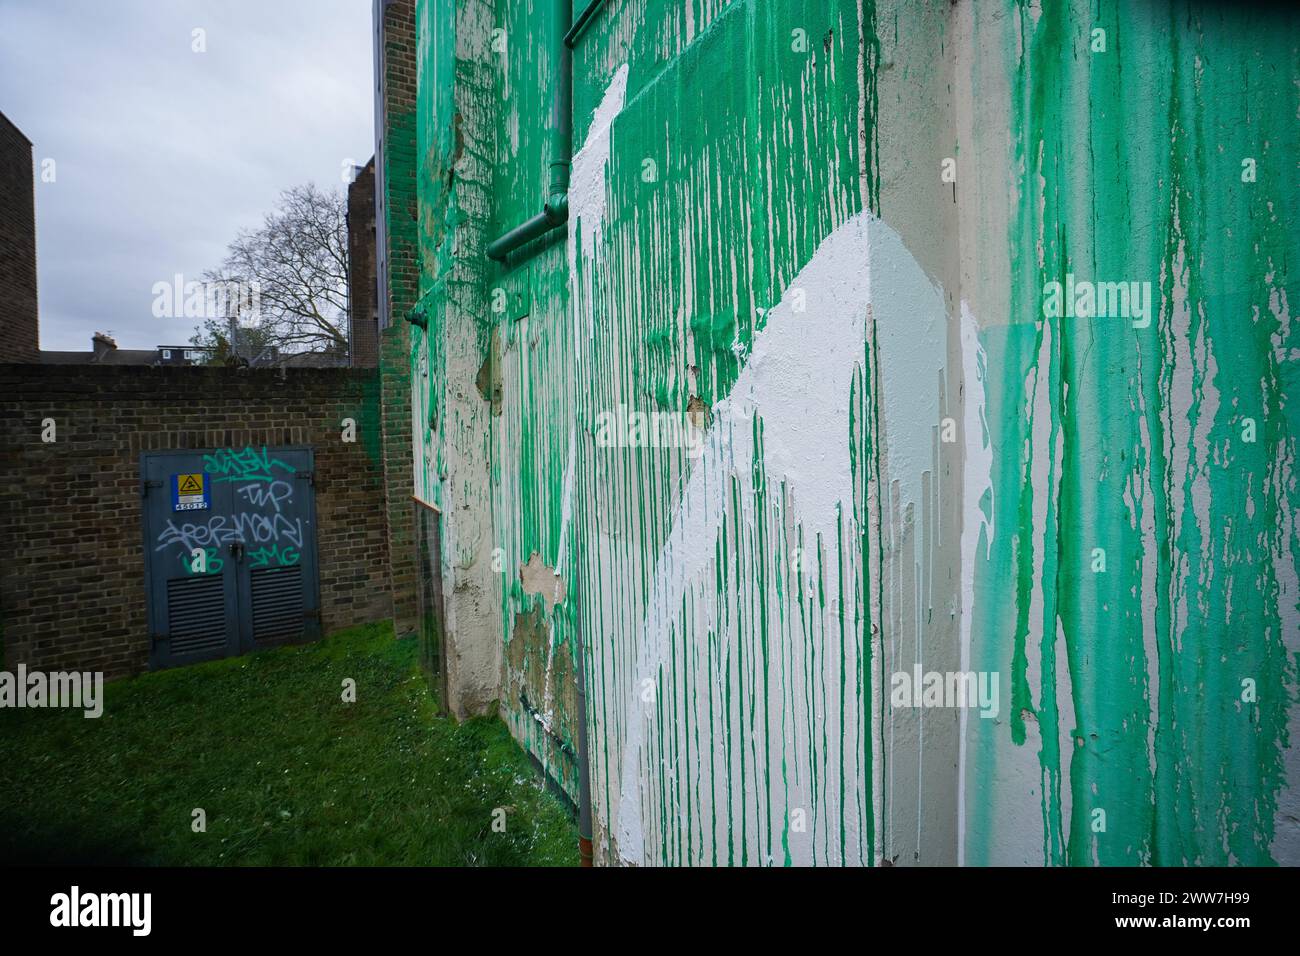 März 2024 . Das neue Banksy-Baumgemälde ist eingezäunt, nachdem es mit weißer Farbe zerstört wurde. Das Wandgemälde ist zu einer Touristenattraktion geworden, bei der Menschen anhalten, um Fotos zu machen. Quelle: amer Gazzal/Alamy Live News Stockfoto